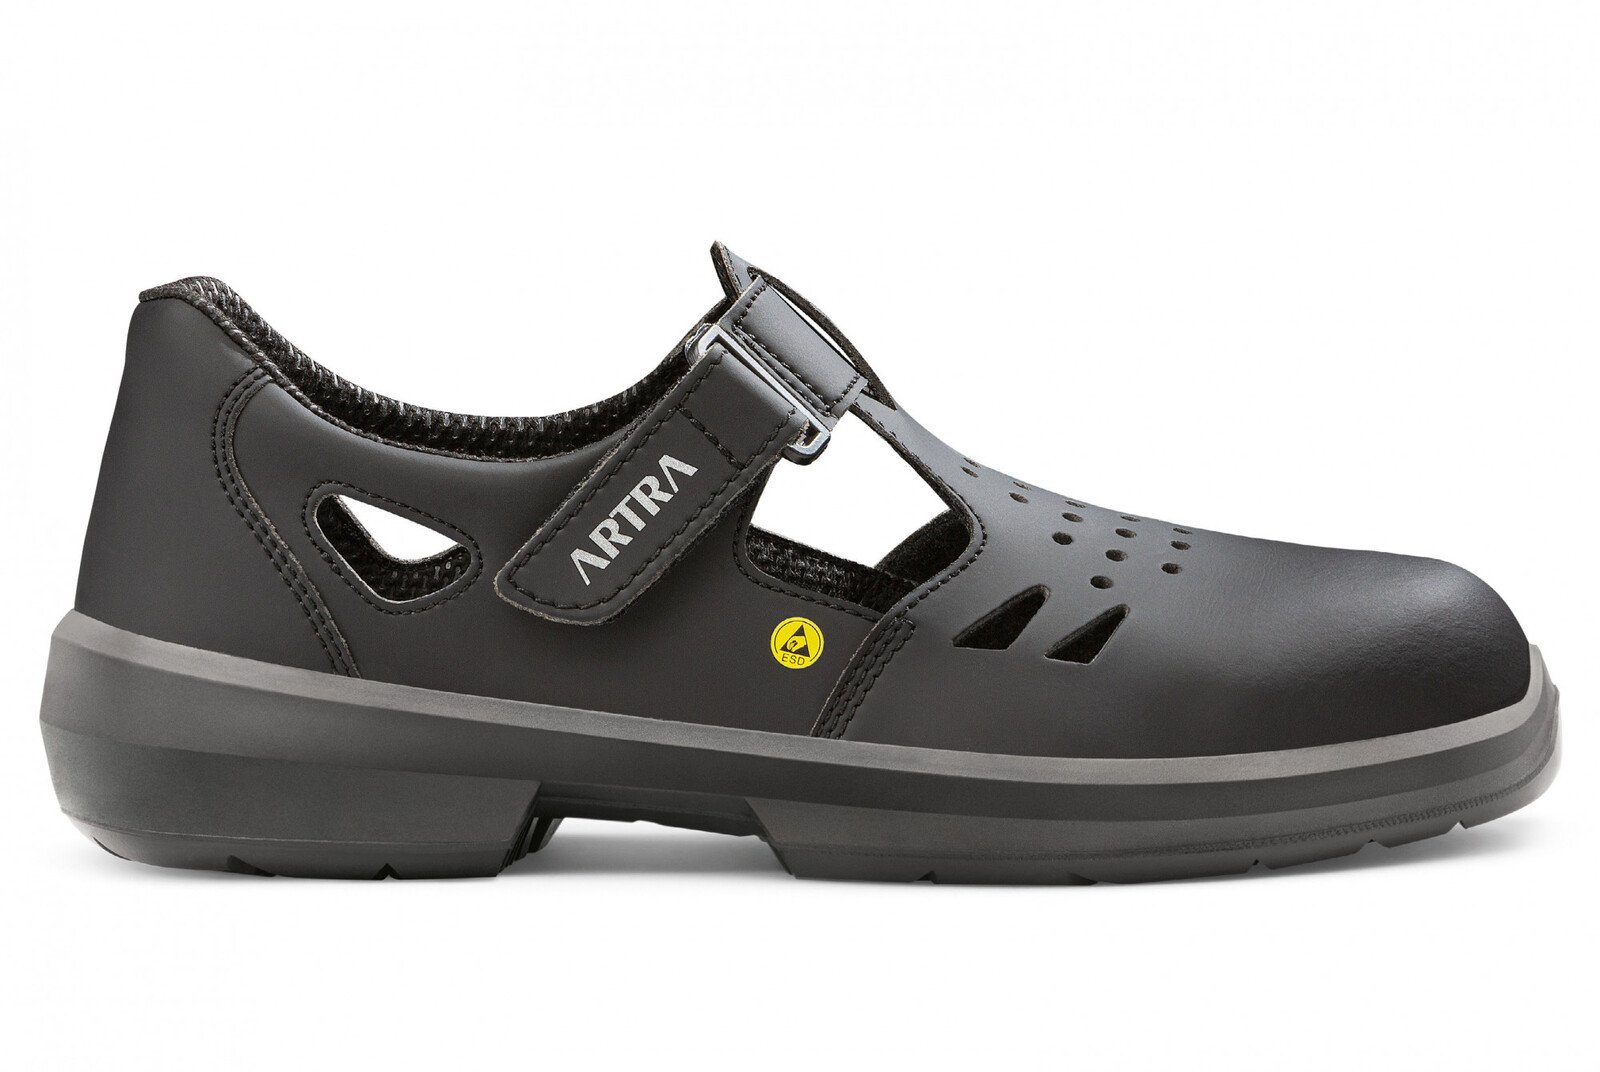 Bezpečnostné sandále Artra Armen 9008 6760 S1P SRC ESD MF - veľkosť: 44, farba: čierna